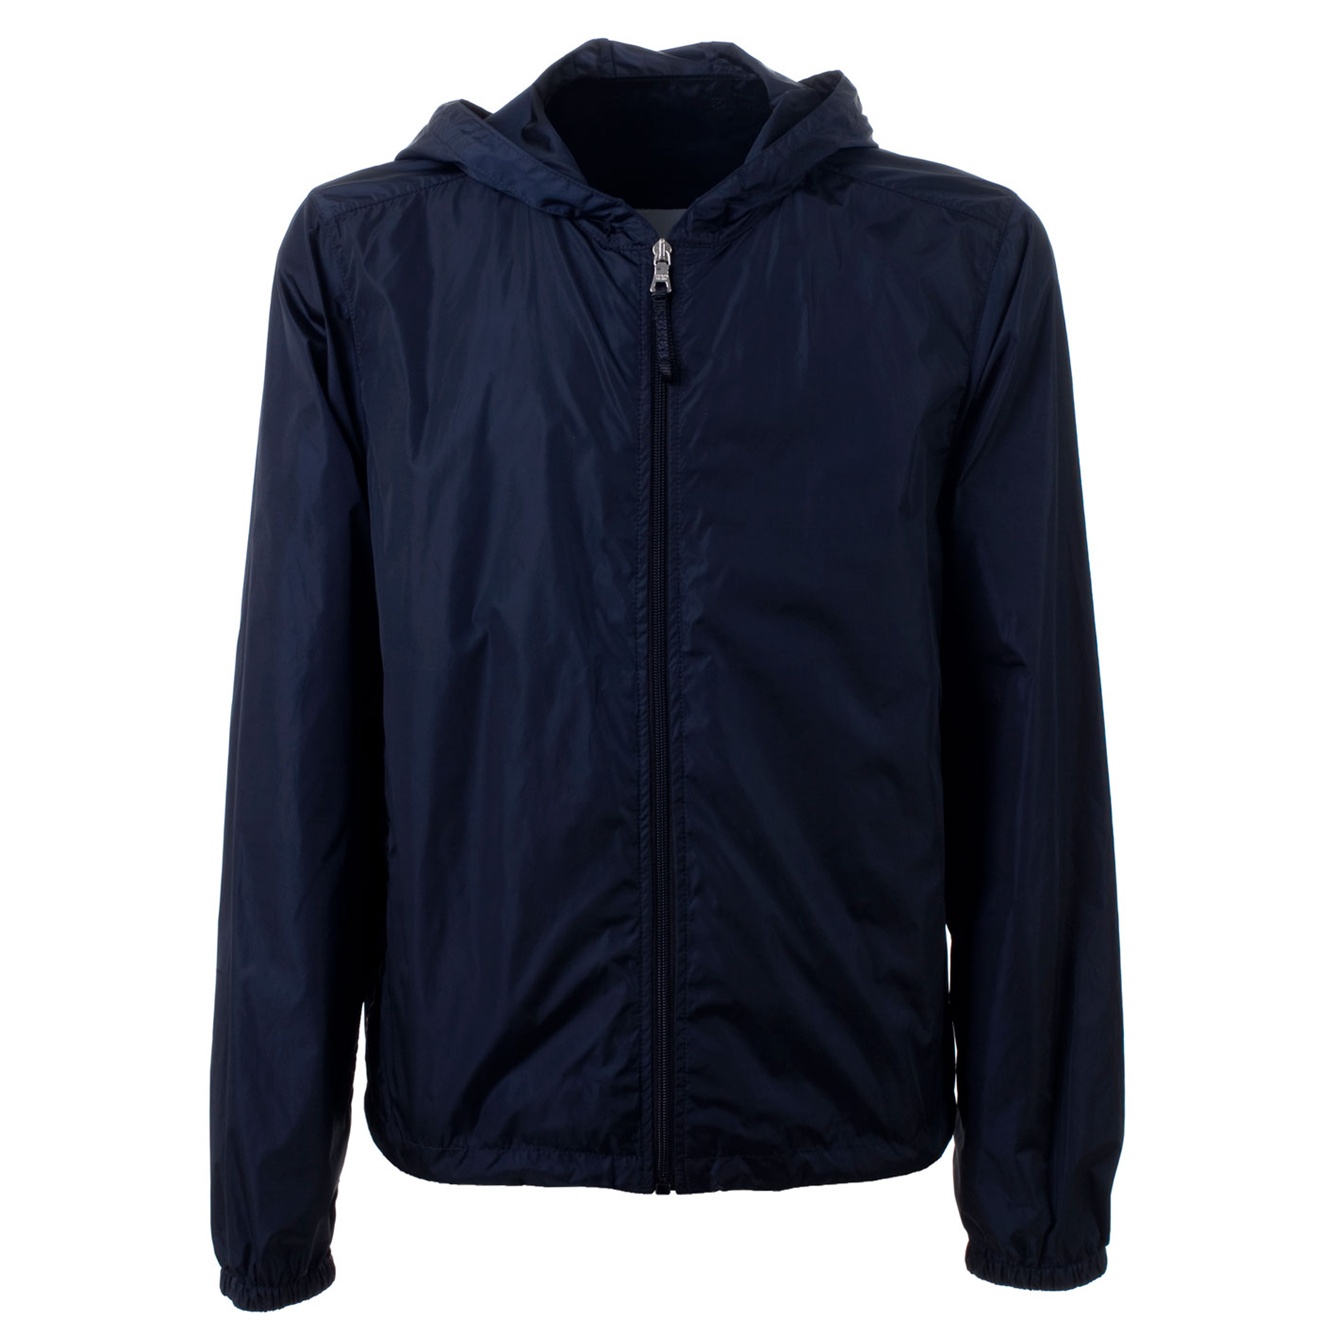 Prada Hooded Waterproof Jacket in Blue for Men - Lyst